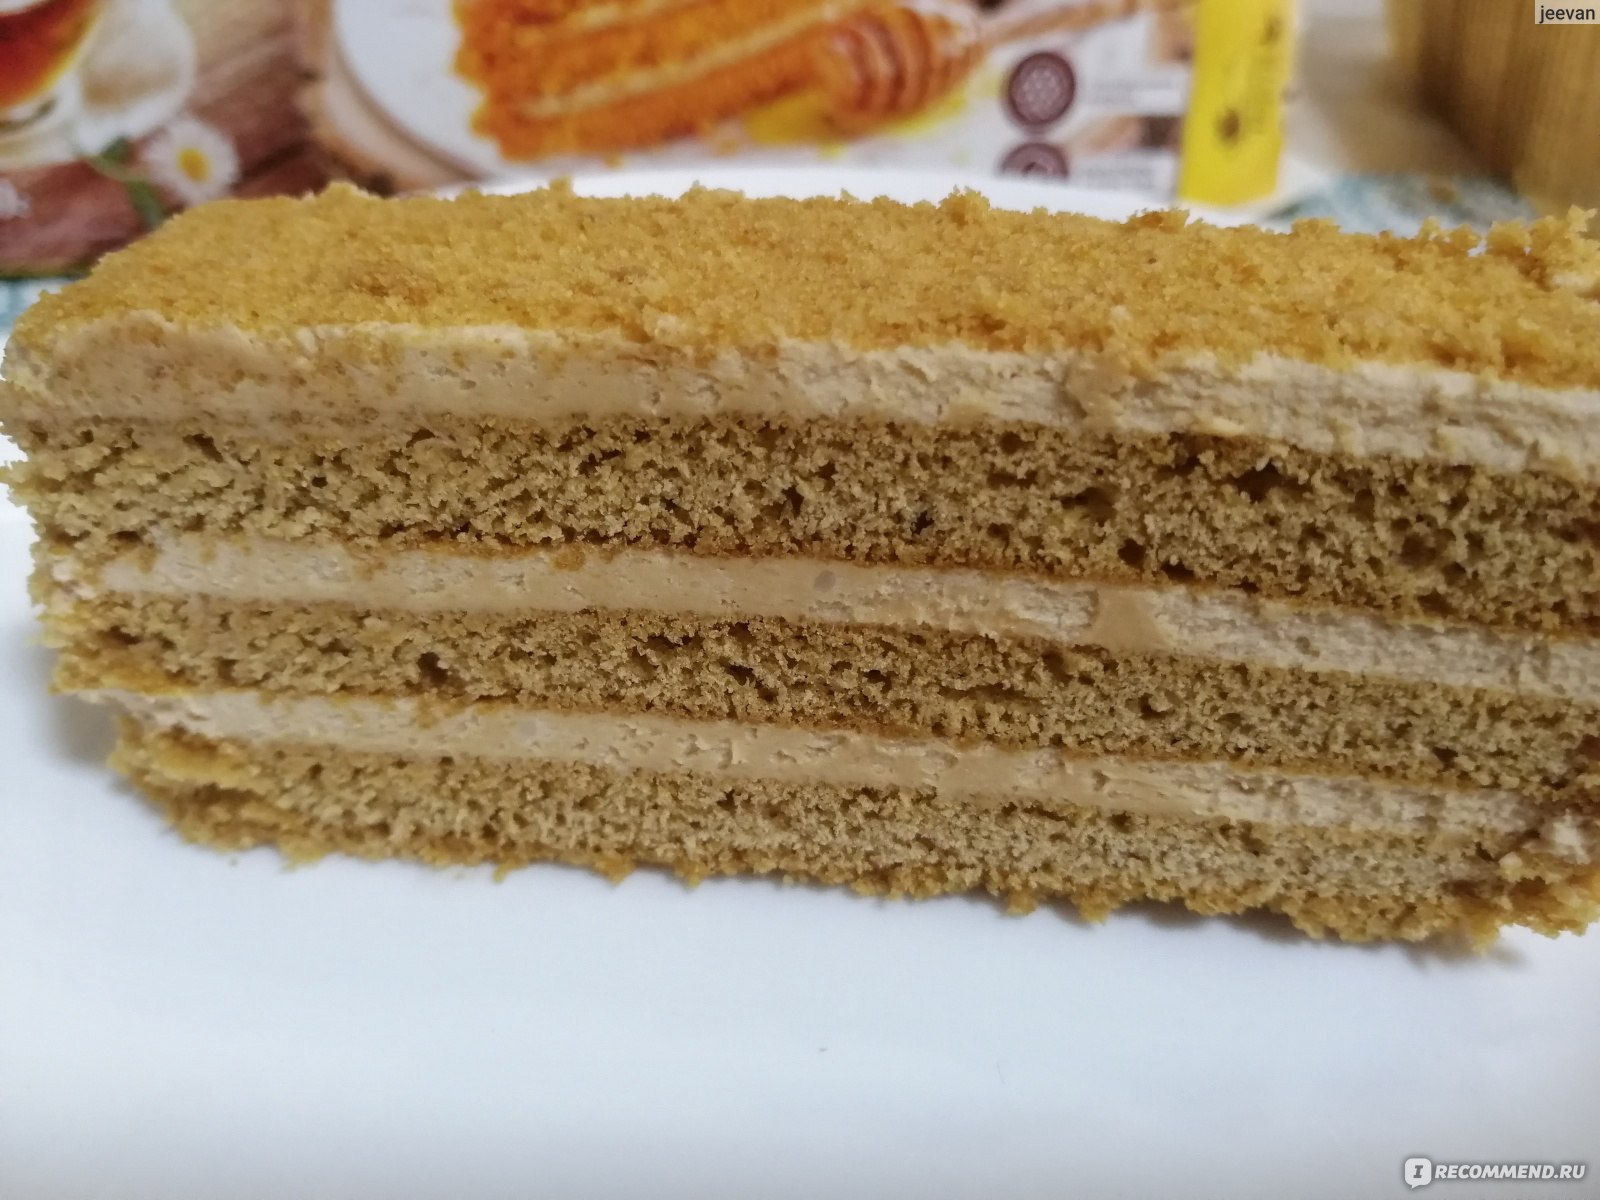 Торт Медовик 630Г Черемушки